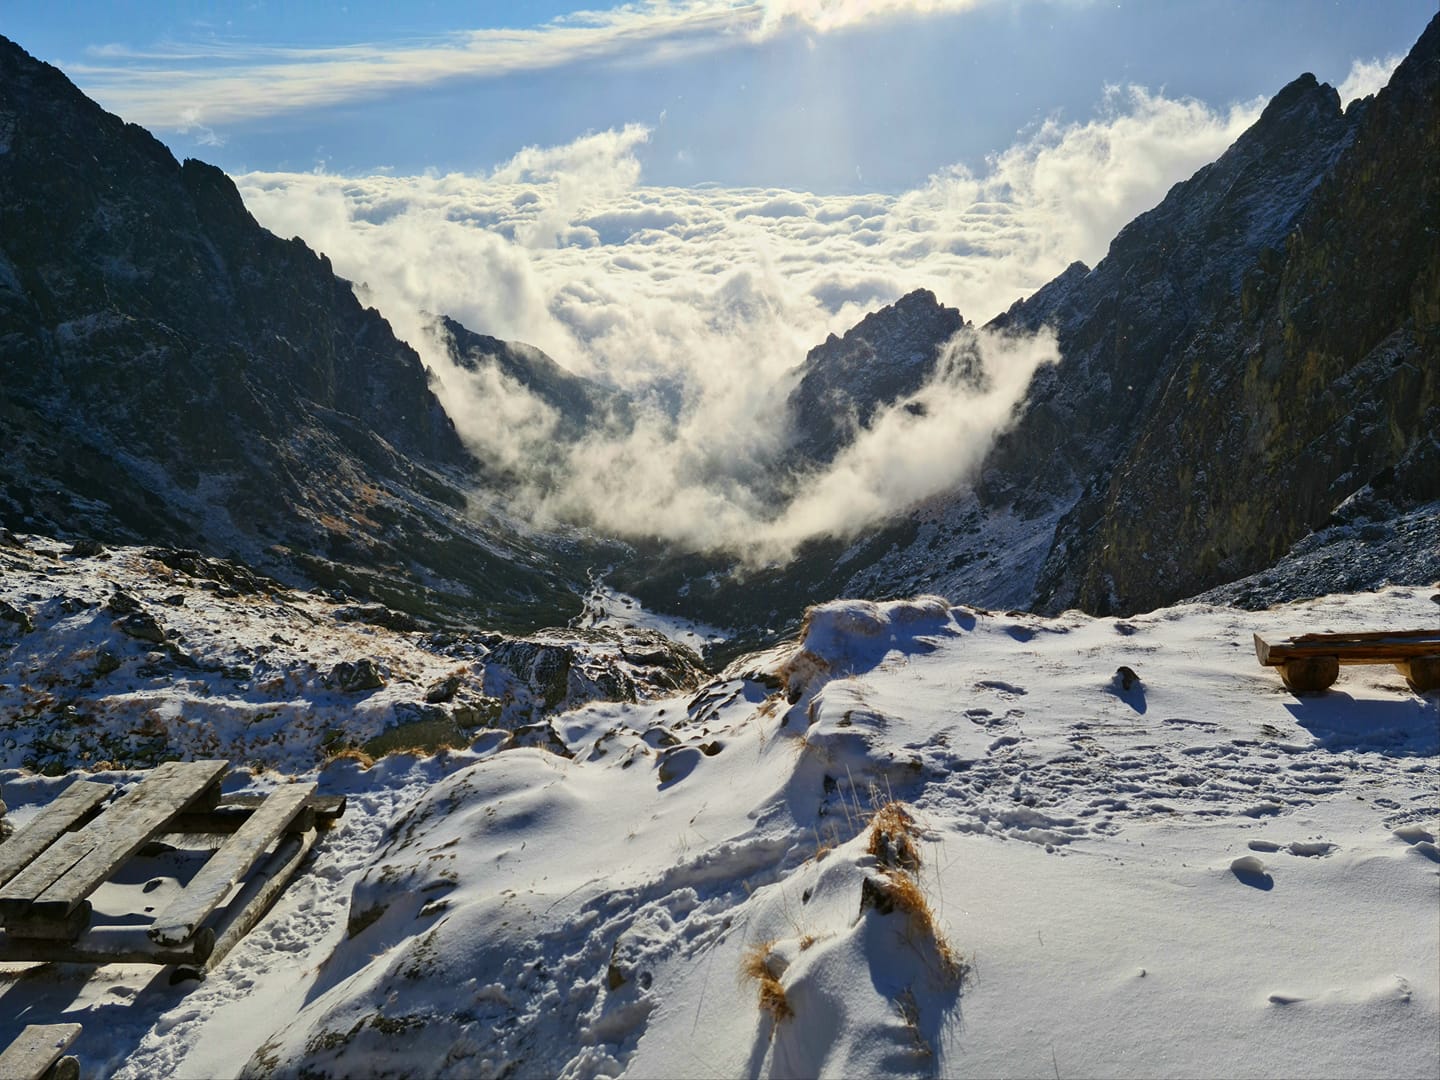 View from Teryho Chata to Mala Studena Dolina Valley. November 28, 2020